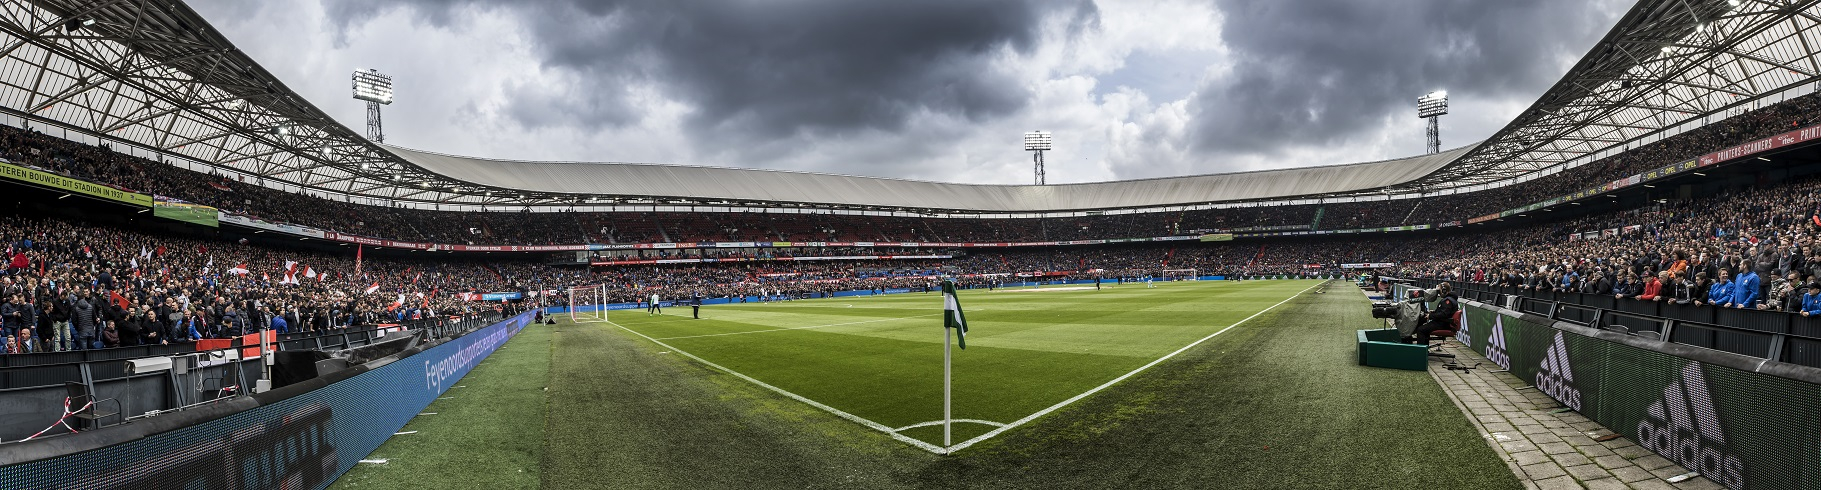 Feyenoord-de-Kuip.jpg